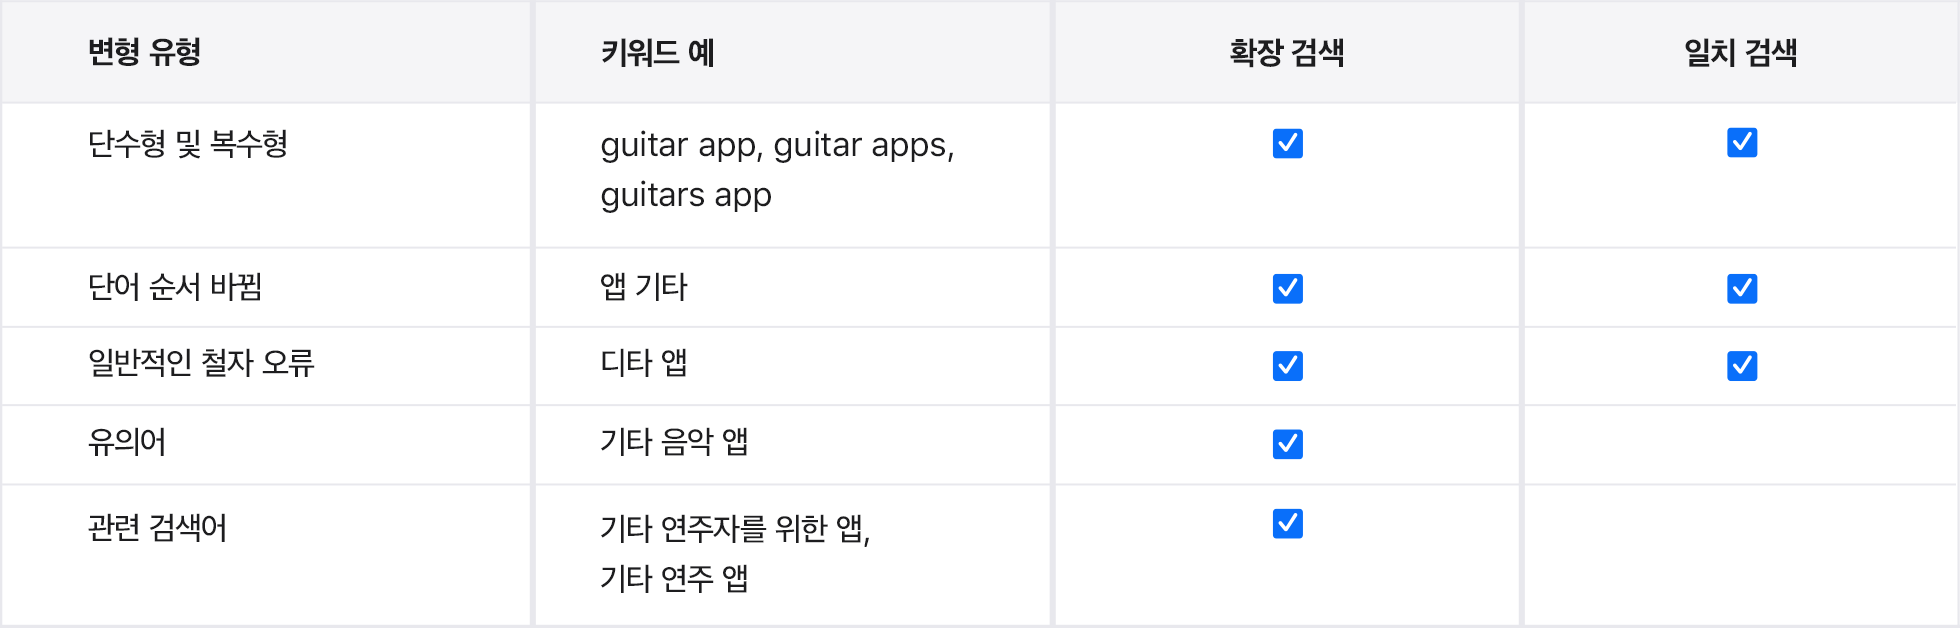 예제 앱 Music Teacher의 검색 유형 변형입니다.